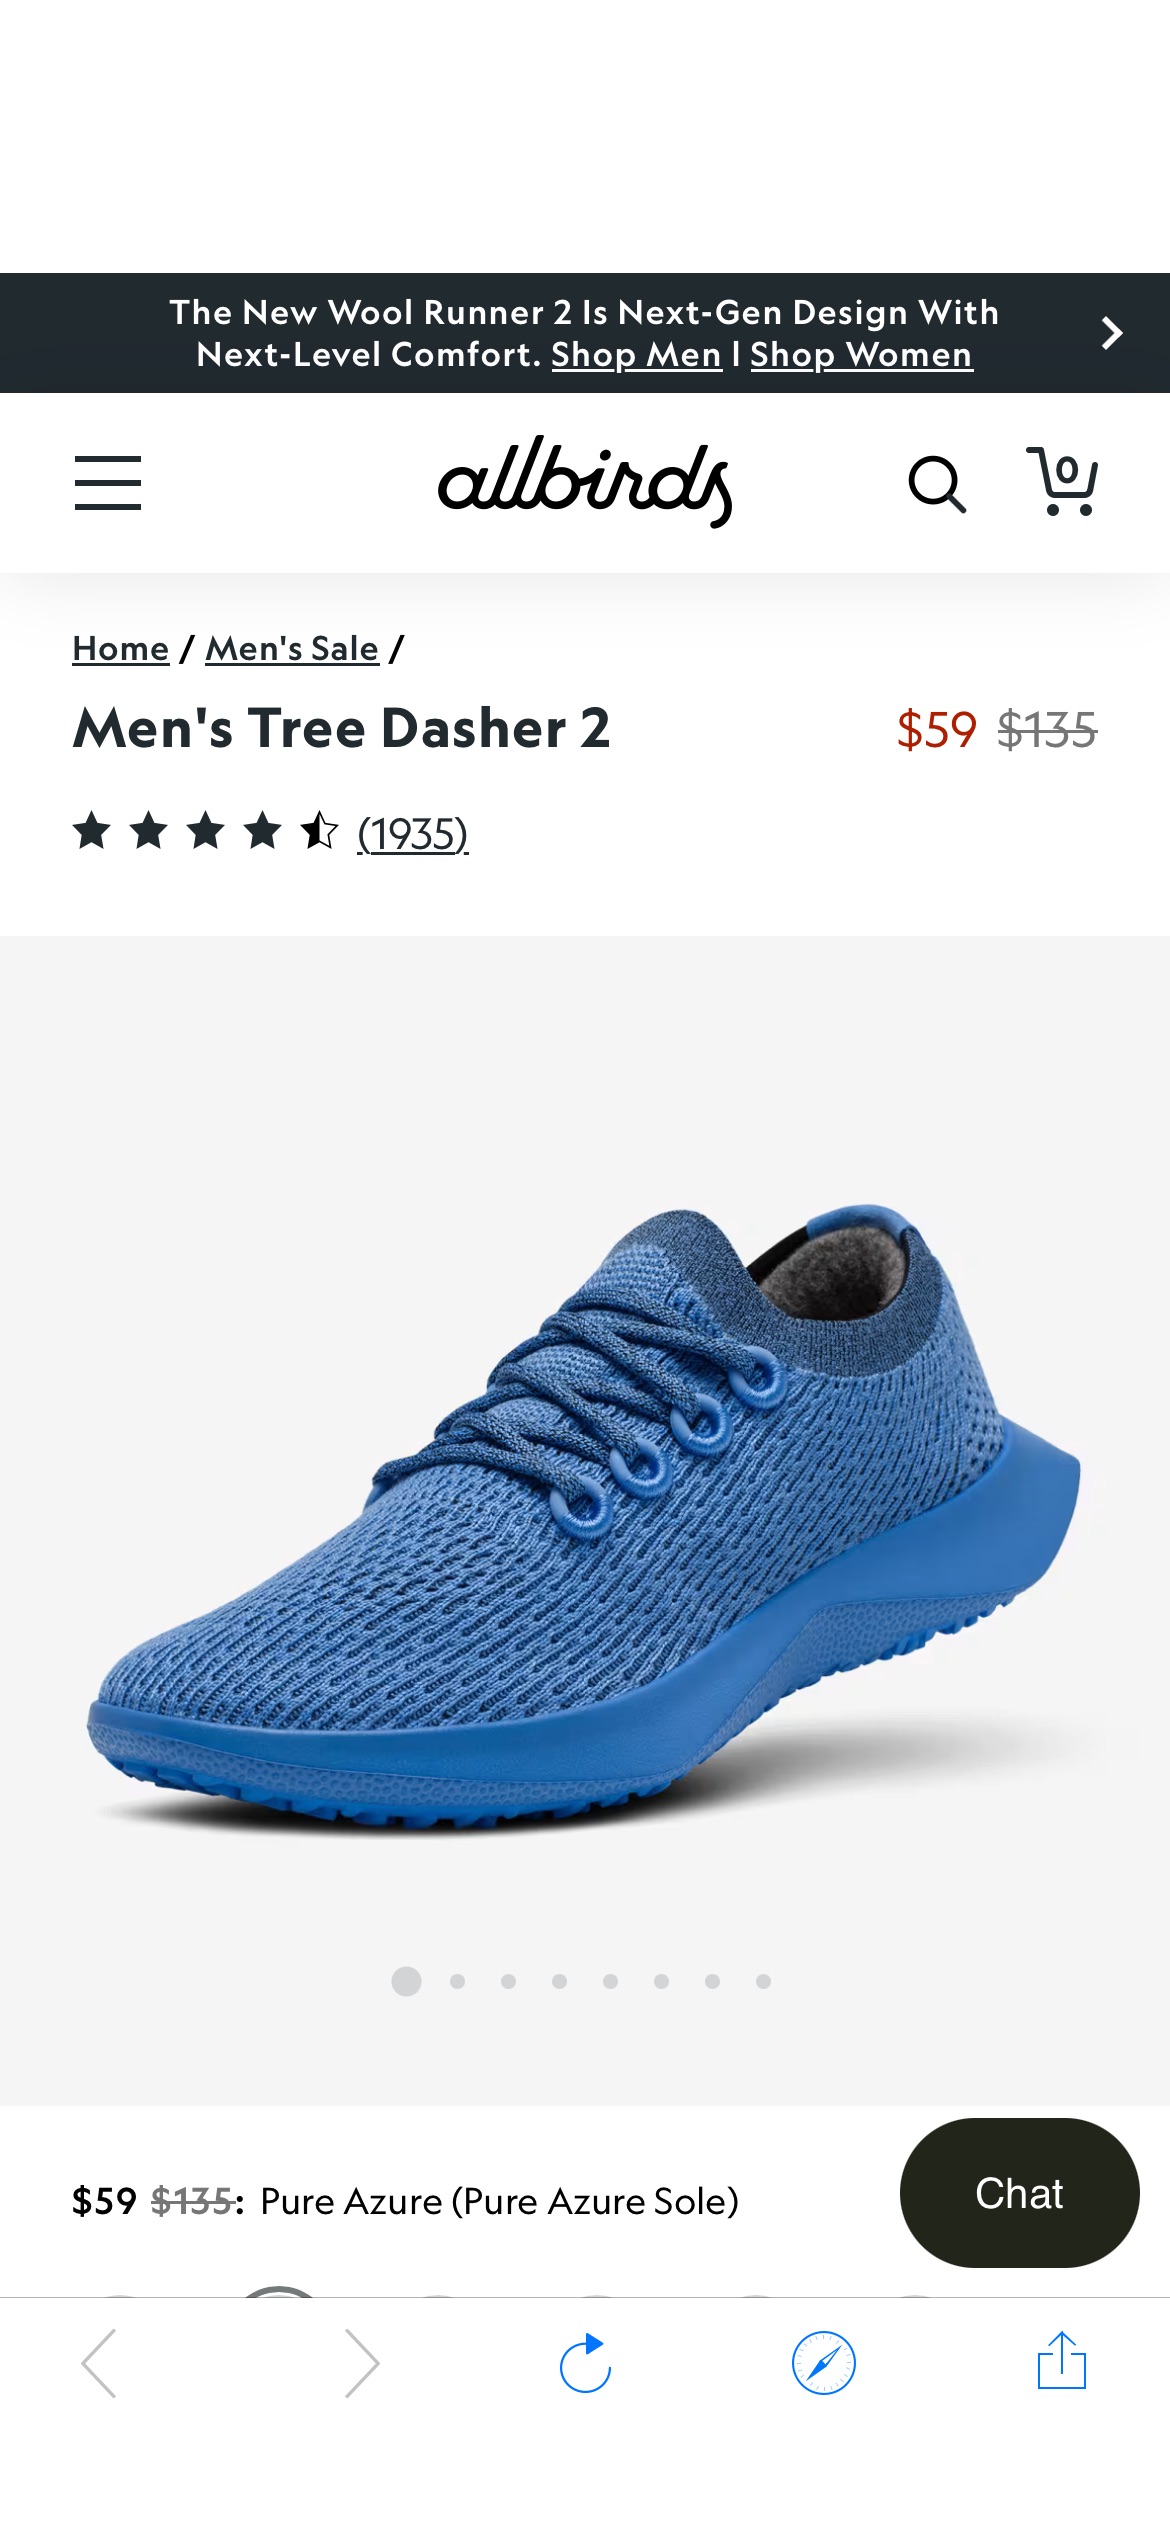 Tree Dasher 2 for Men | Running Shoes | Allbirds